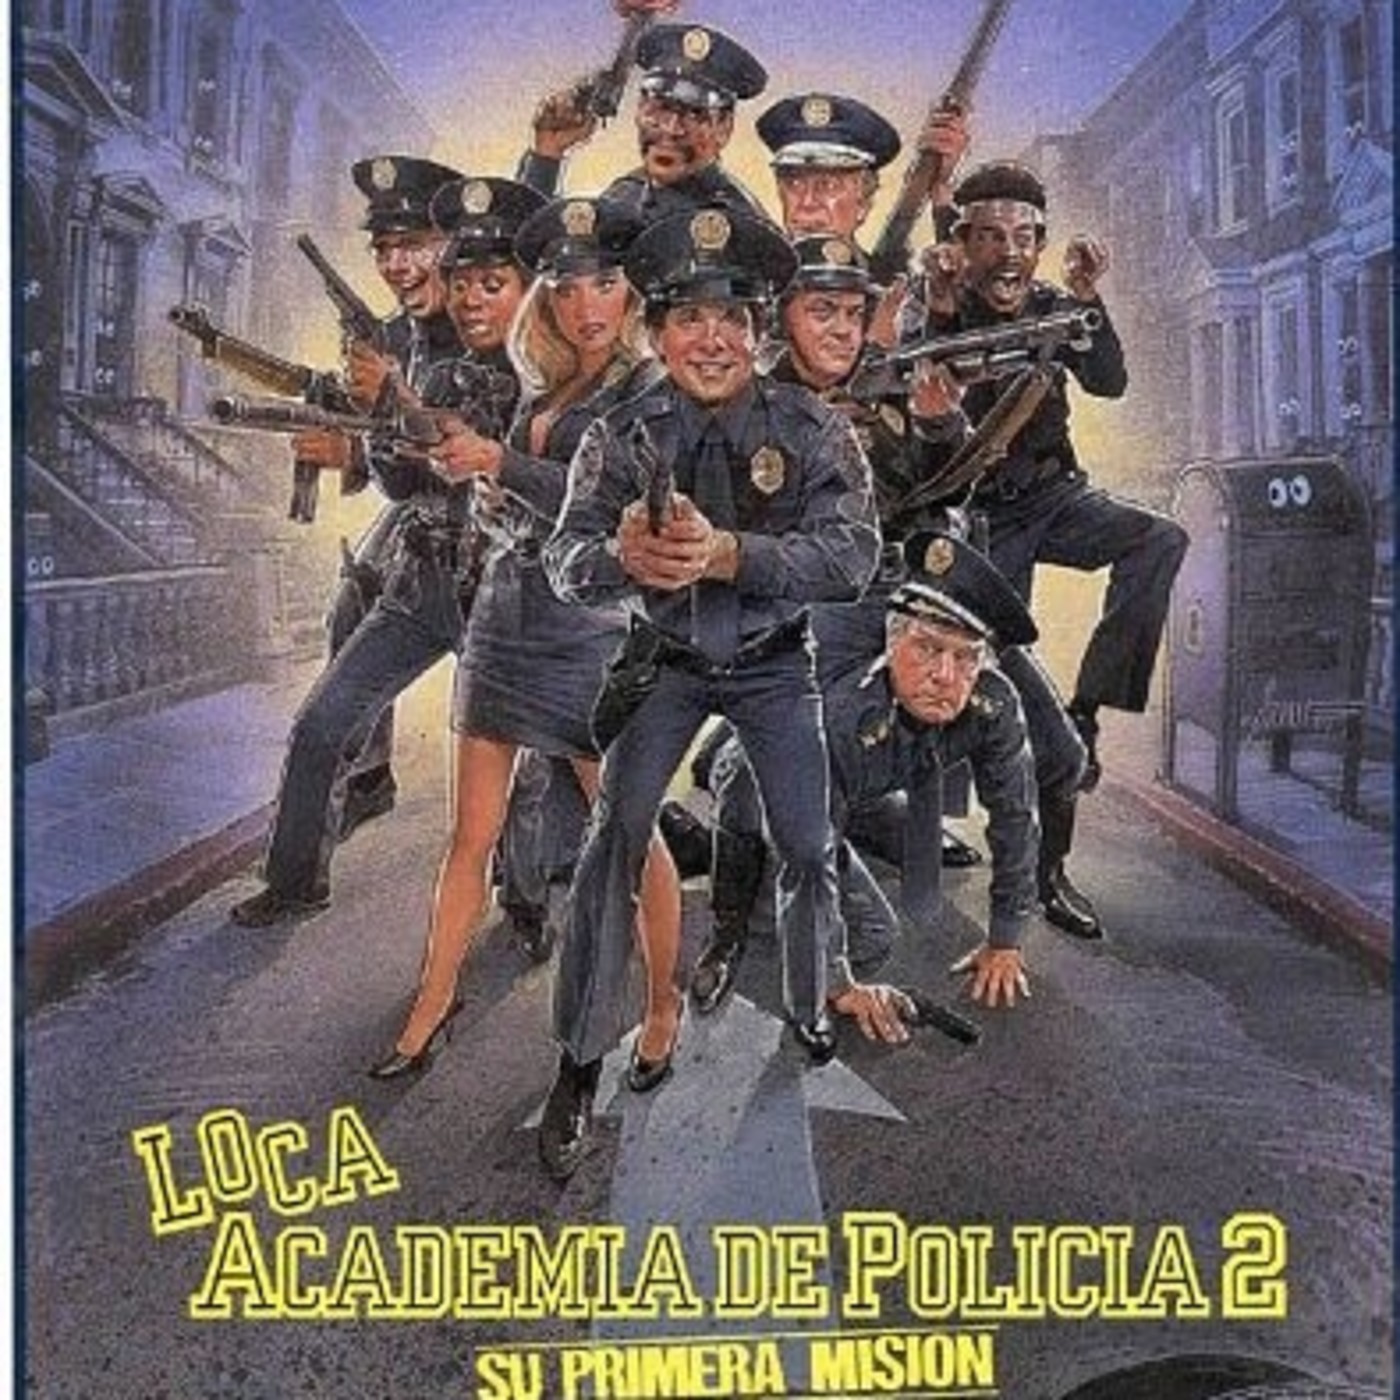 Sintético 105+ Foto loca academia de policia pelicula completa en español castellano Mirada tensa